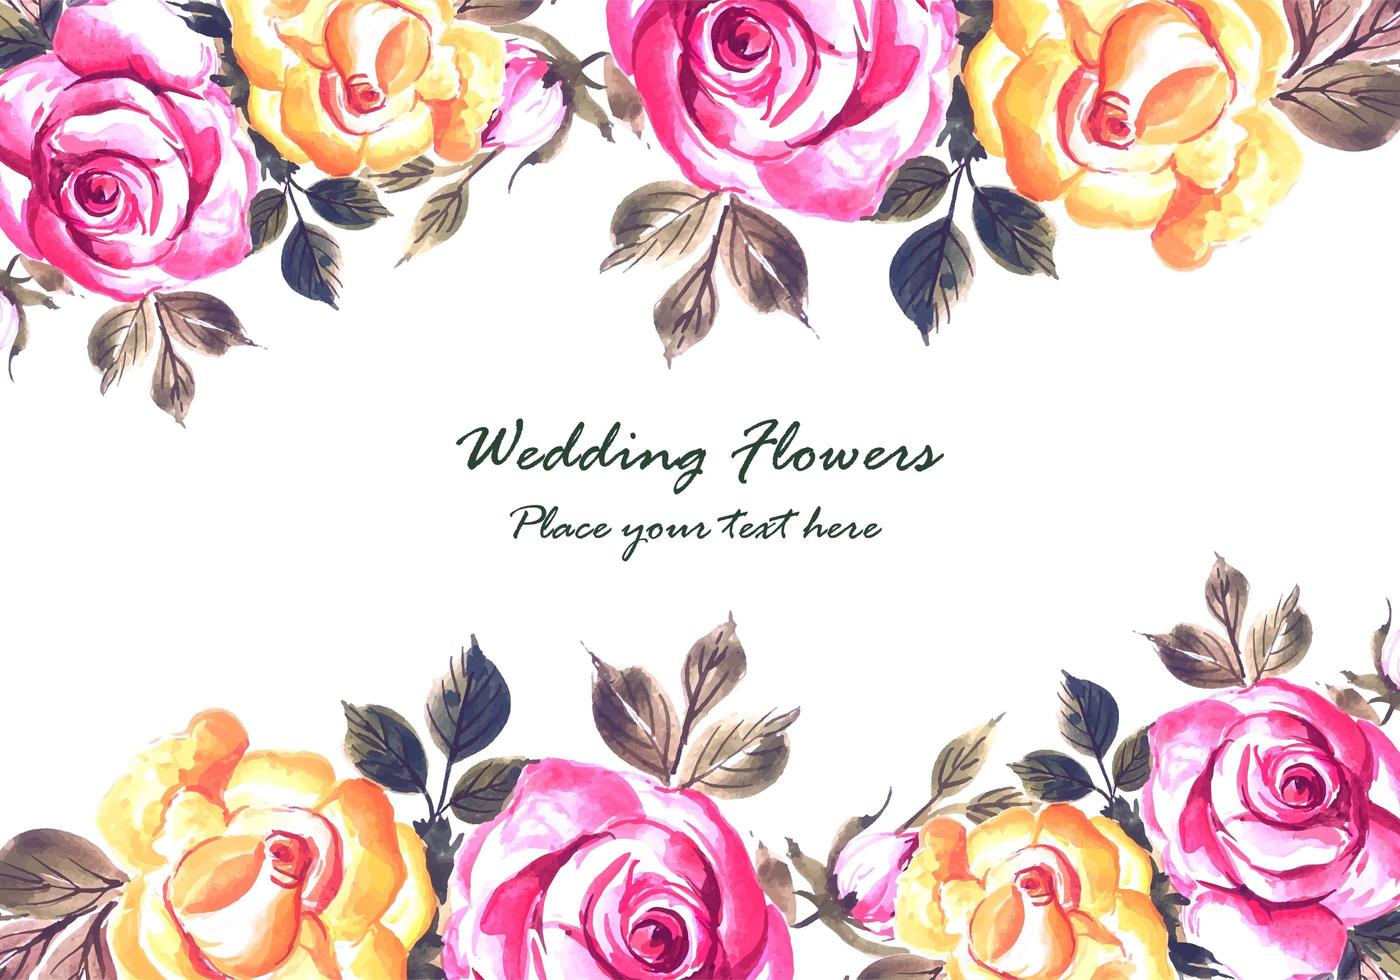 Fundo de cartão de flores coloridas de casamento romântico vetor